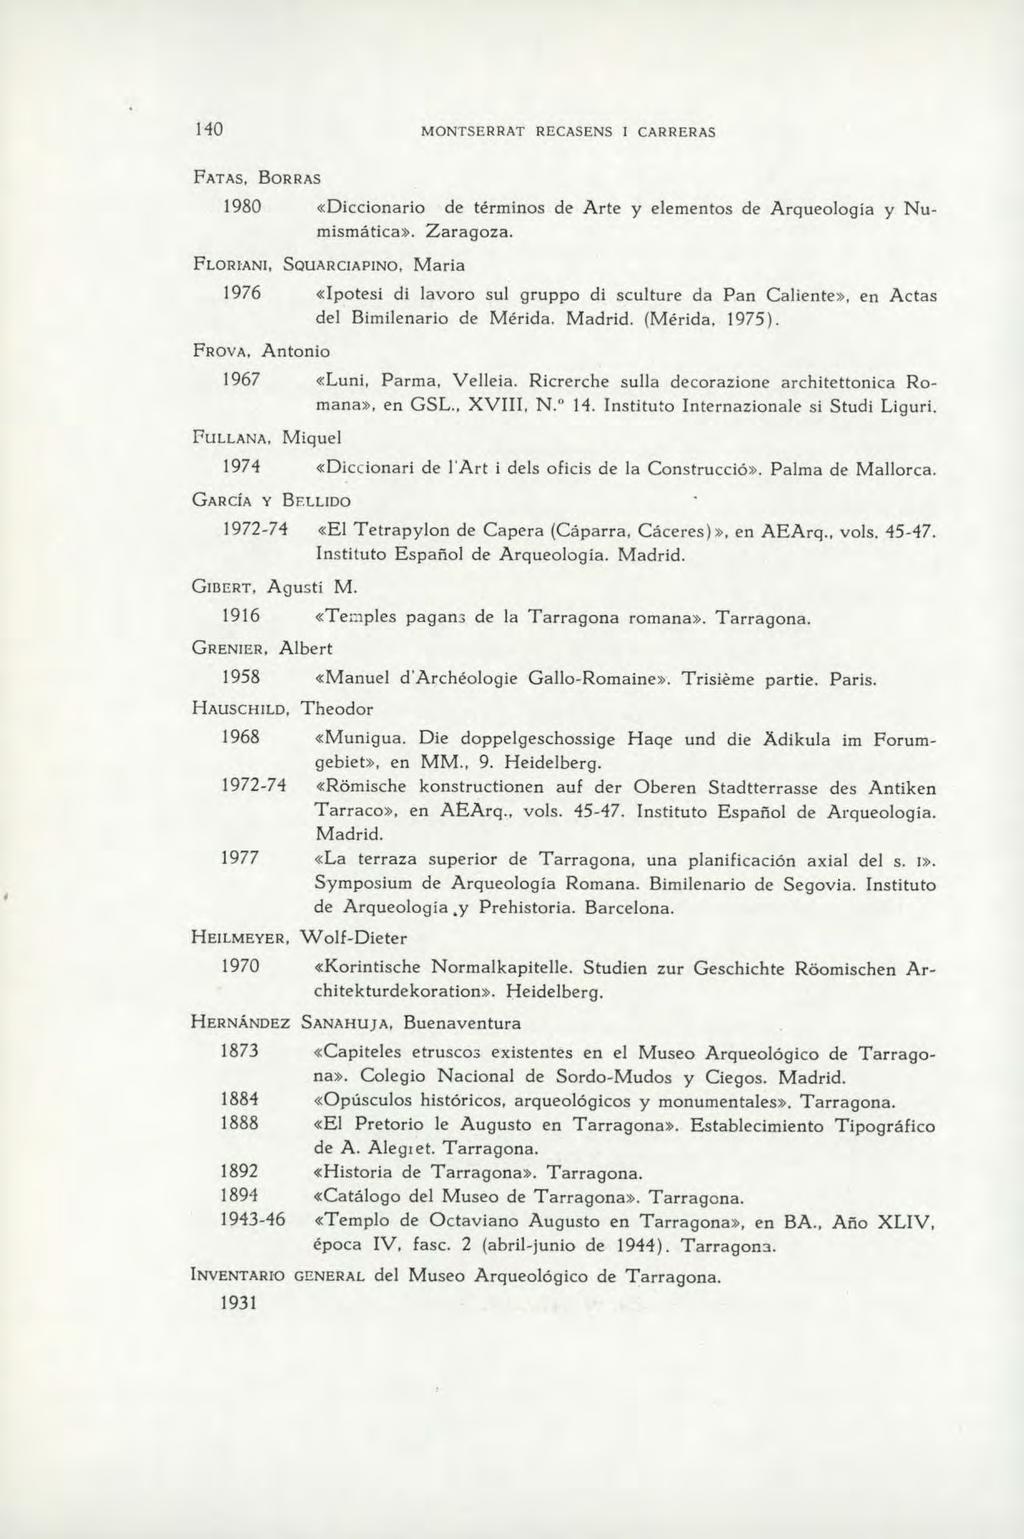 FATAS, BORRAS 1980 «Diccionario de términos de Arte y elementos de Arqueologia y Numismática». Zaragoza.